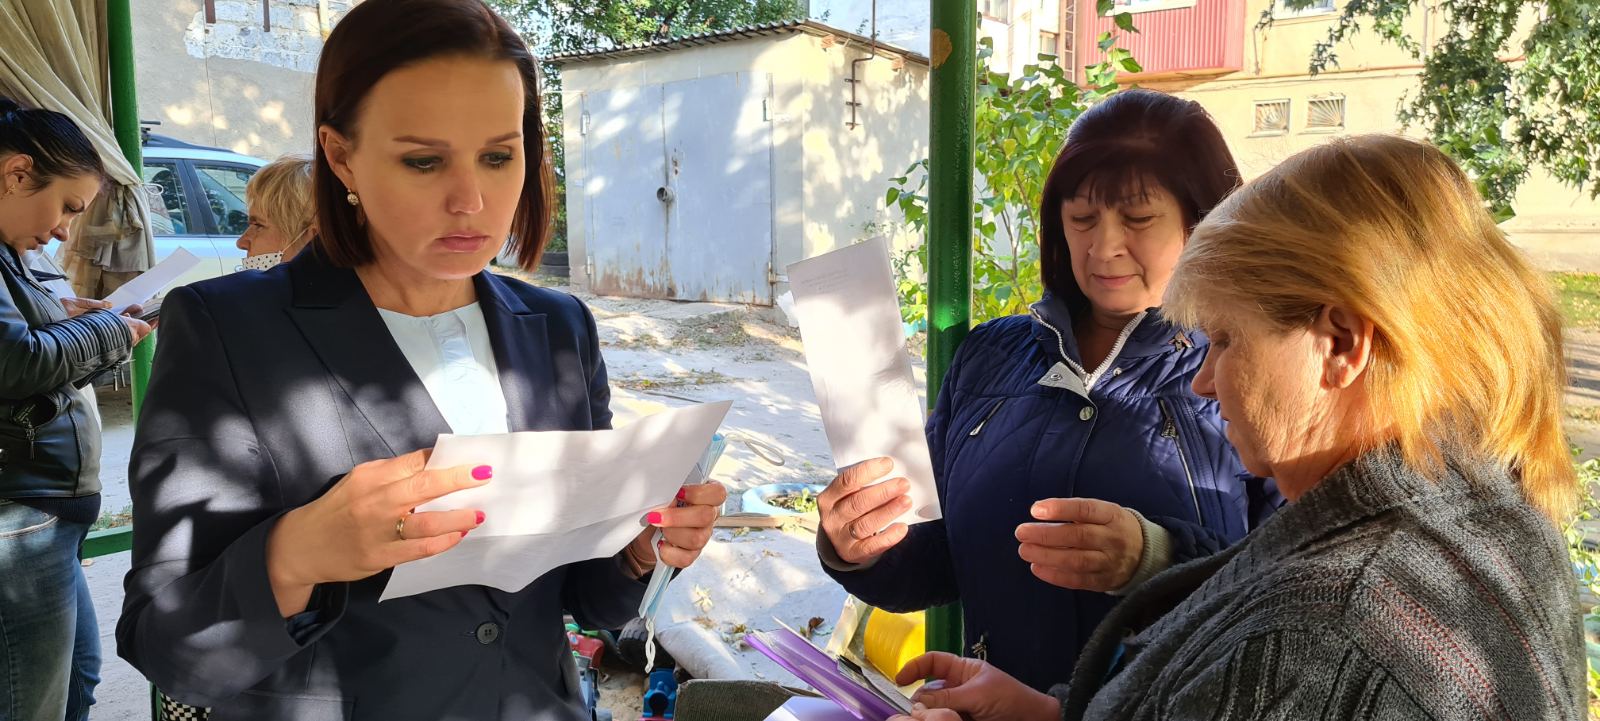 Активисты Блока Кернеса взяли под контроль ремонт придомовых территорий в Московском районе